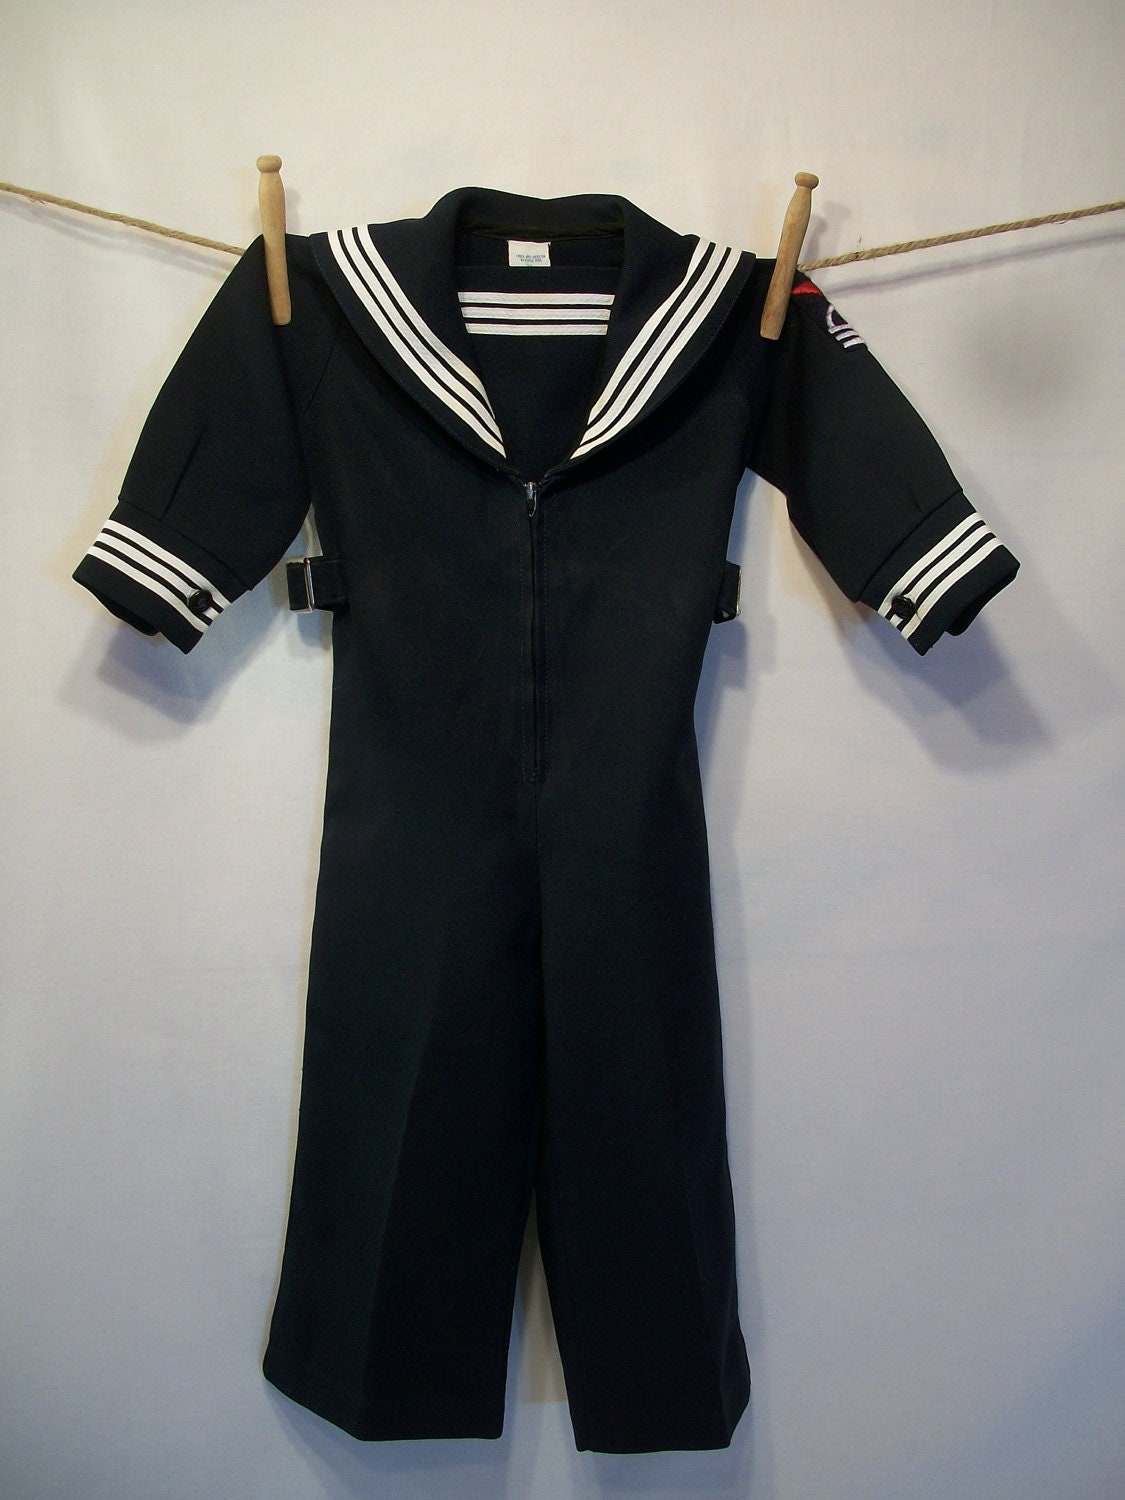 childs sailor suit